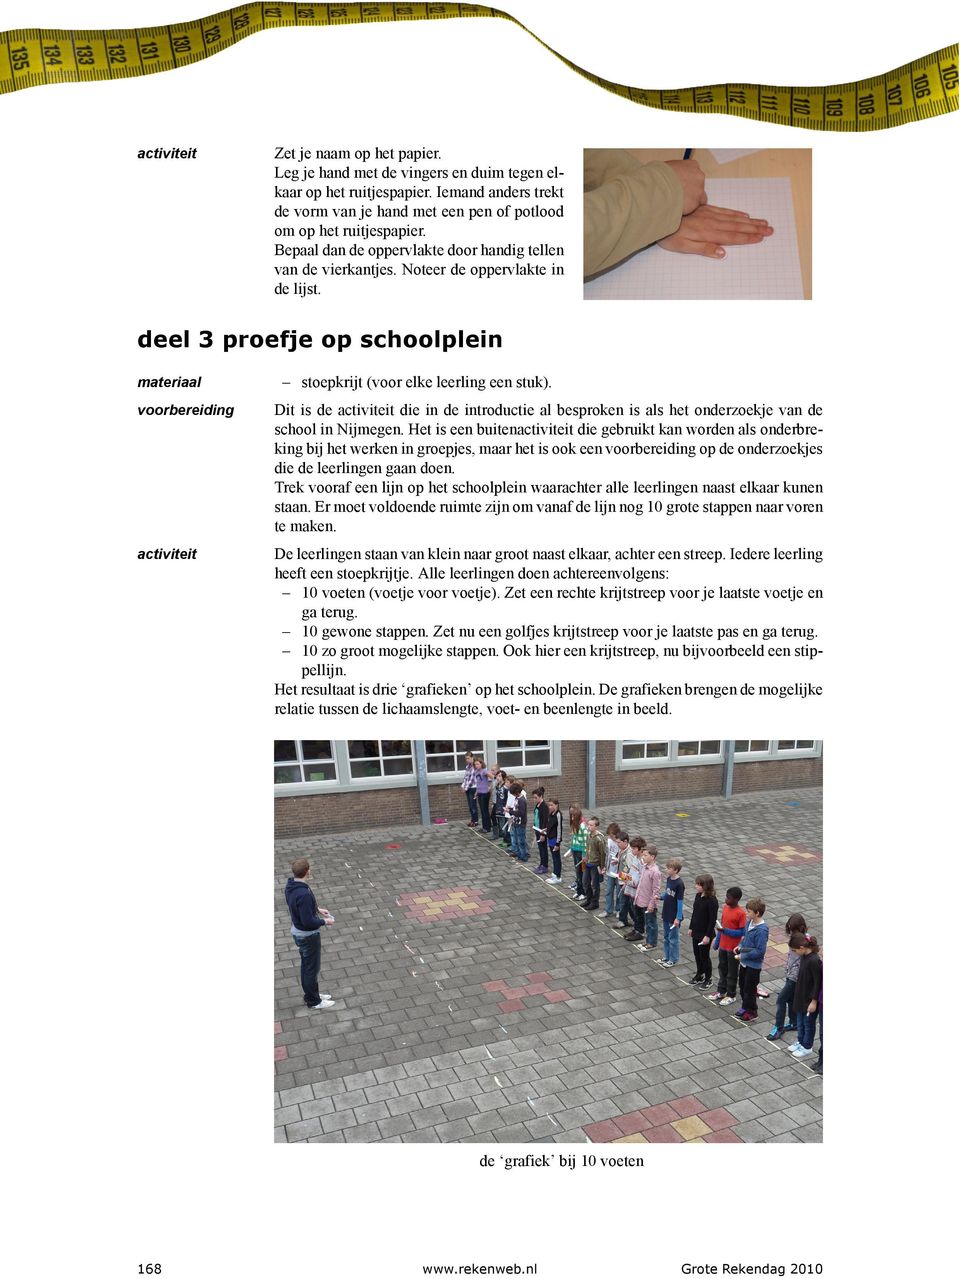 voorbereiding Dit is de die in de introductie al besproken is als het onderzoekje van de school in Nijmegen.